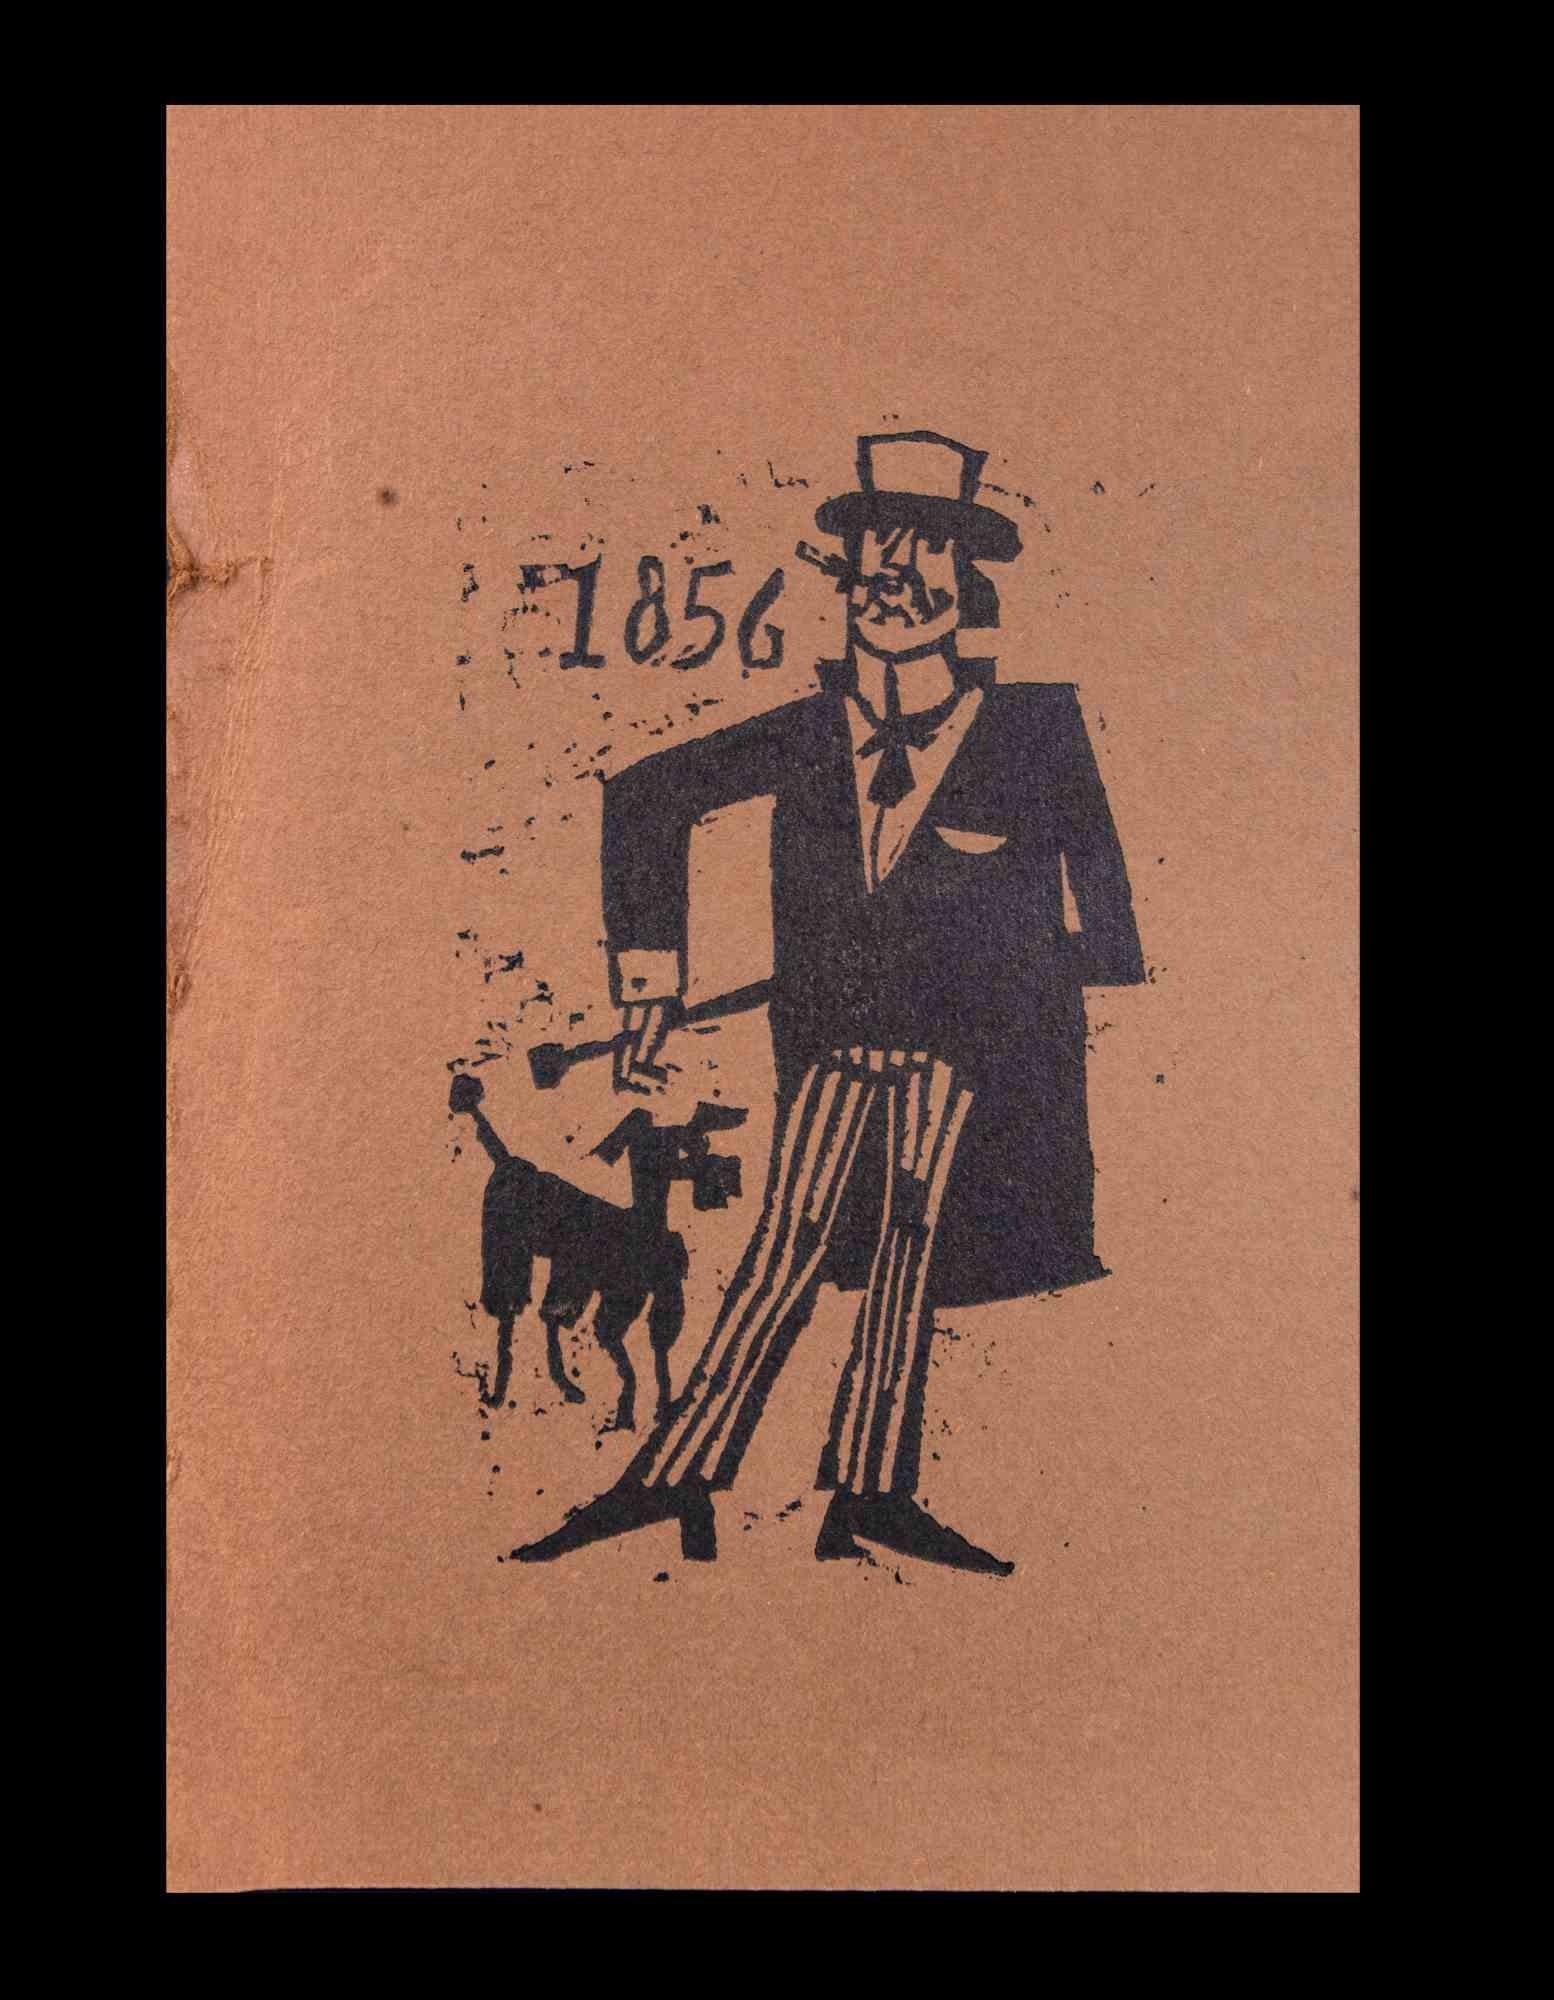 Smoking Gentleman in 1856 ist ein Holzschnitt auf bräunlichem Farbpapier Druck auf Papier realisiert von Charles Sterns im frühen 20.

Guter Zustand mit einem kleinen Schnitt am Rand.

Das Kunstwerk ist meisterhaft dargestellt durch intensive